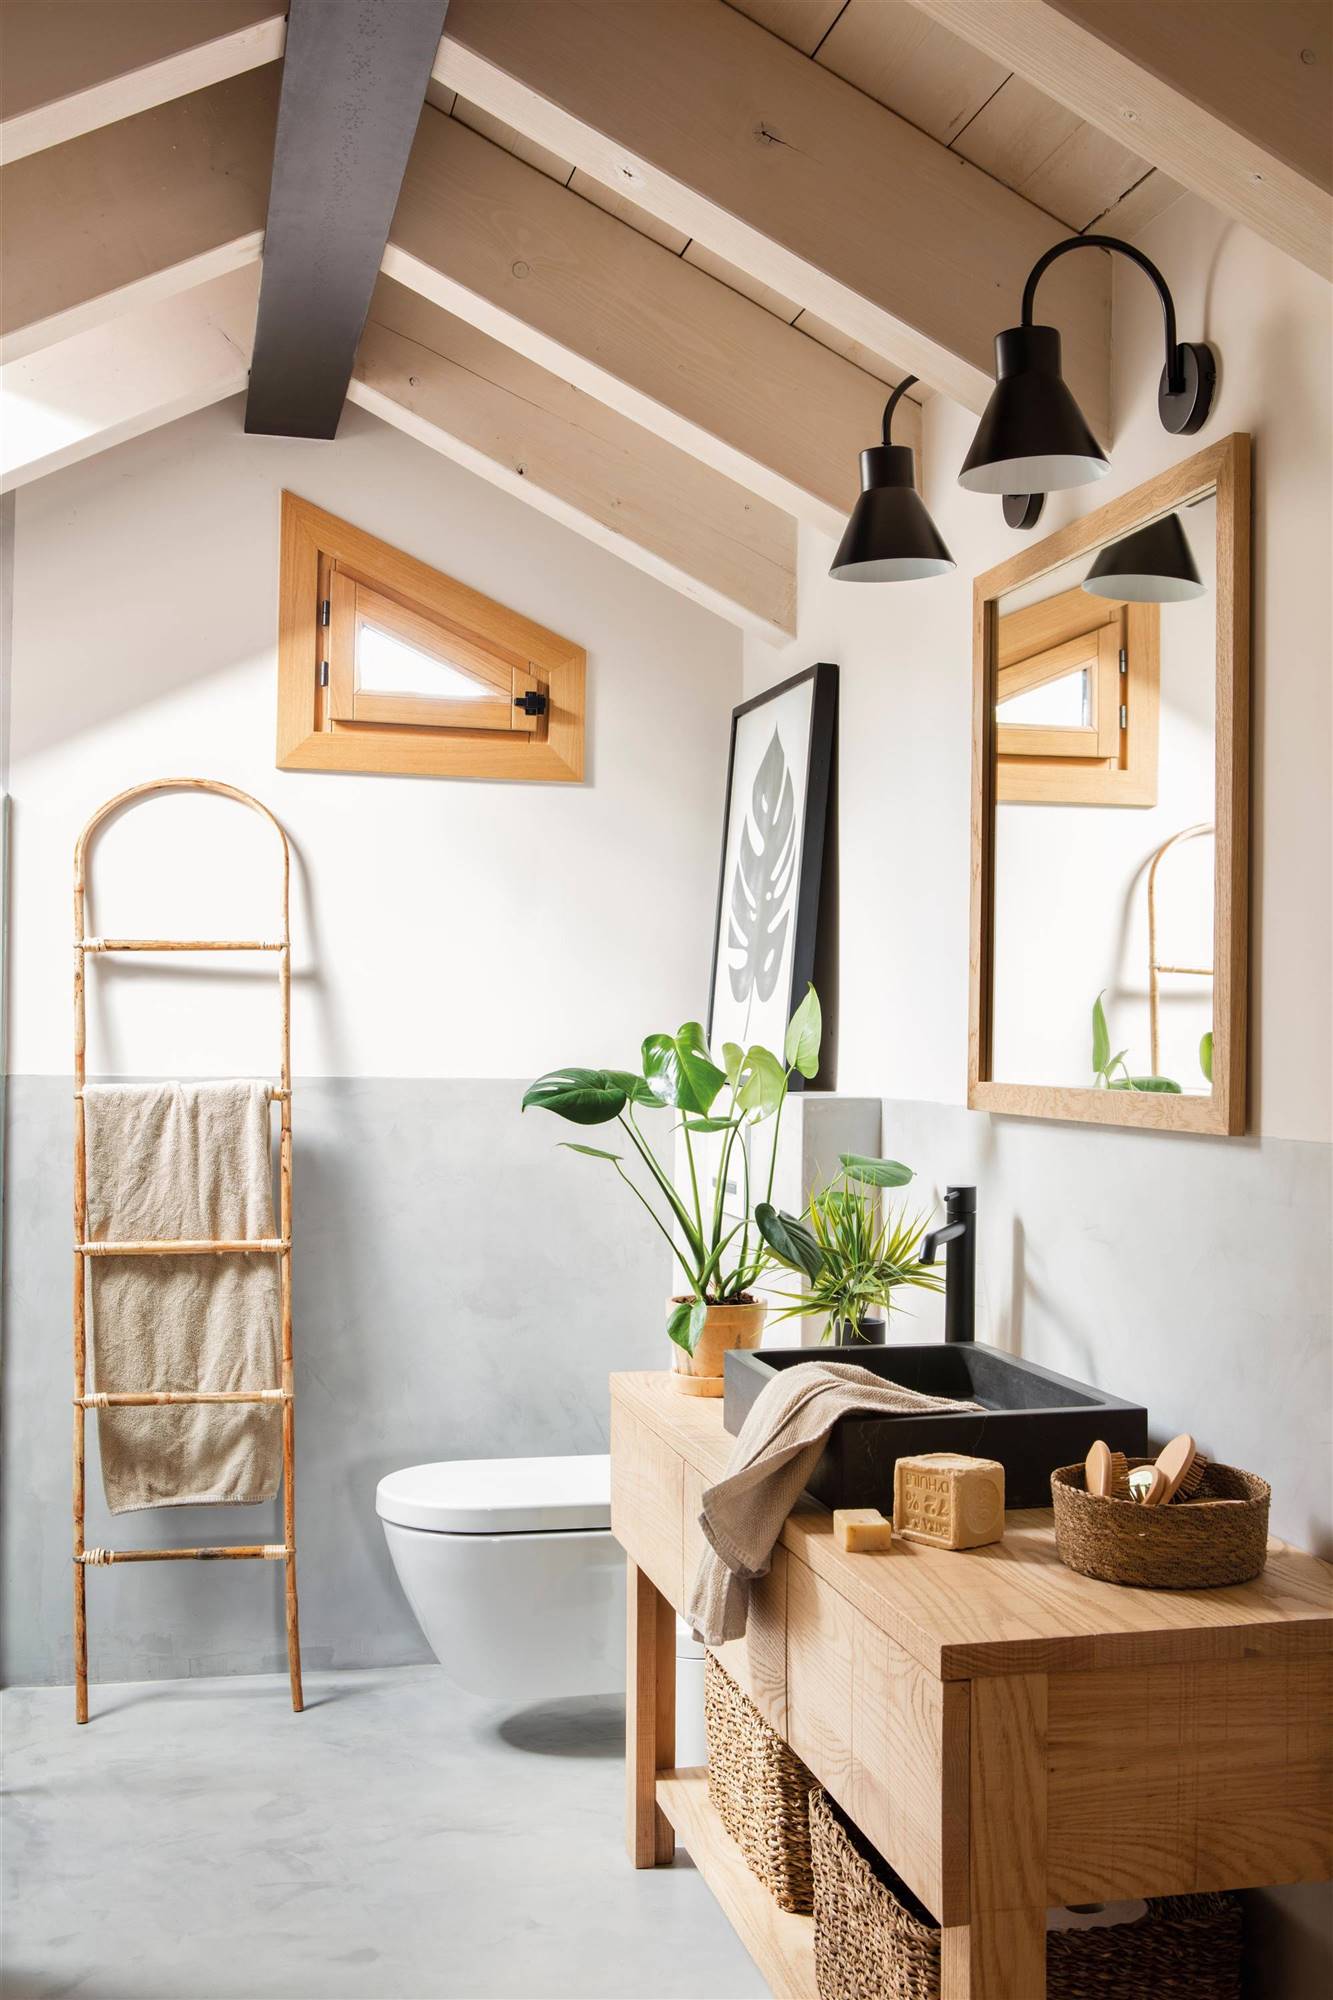 Baño abuhadillado con las paredes lisas en dos colores y mueble de madera. 